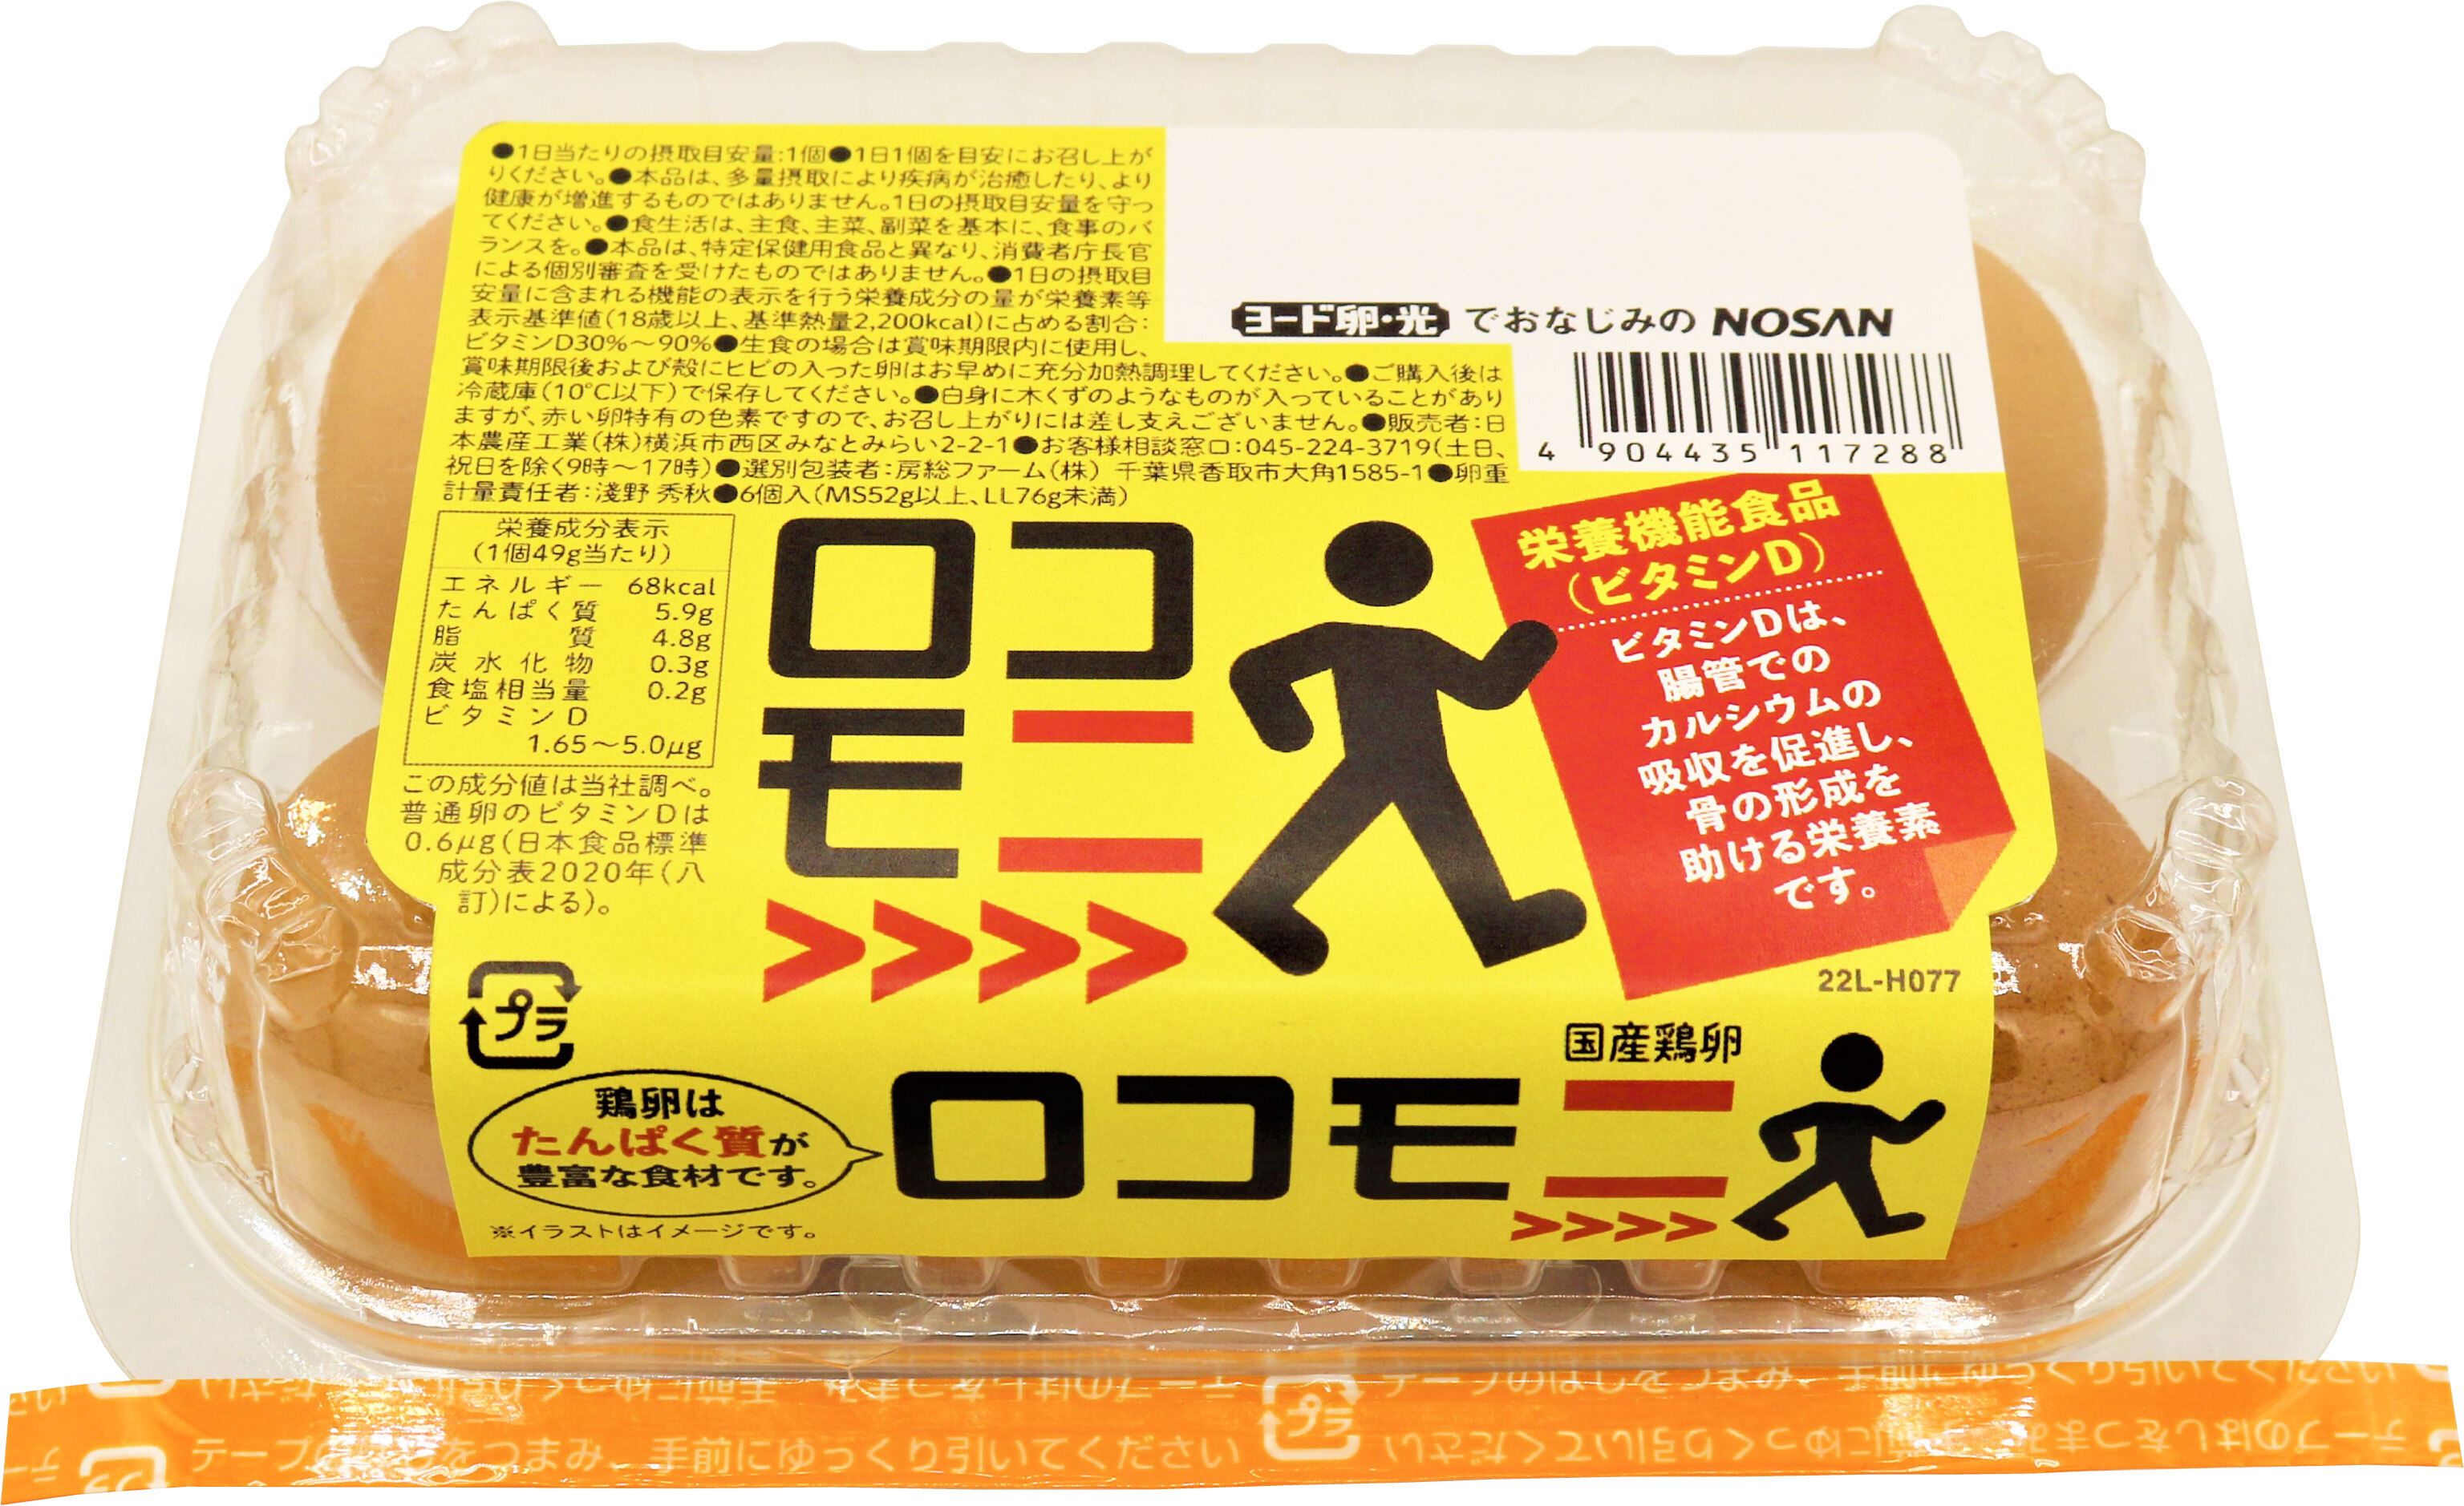 東京都北区の渋沢逸品館ブランドオリジナル食品、
“オーツ麦”使用の5色のオートミールスープリゾットを発売